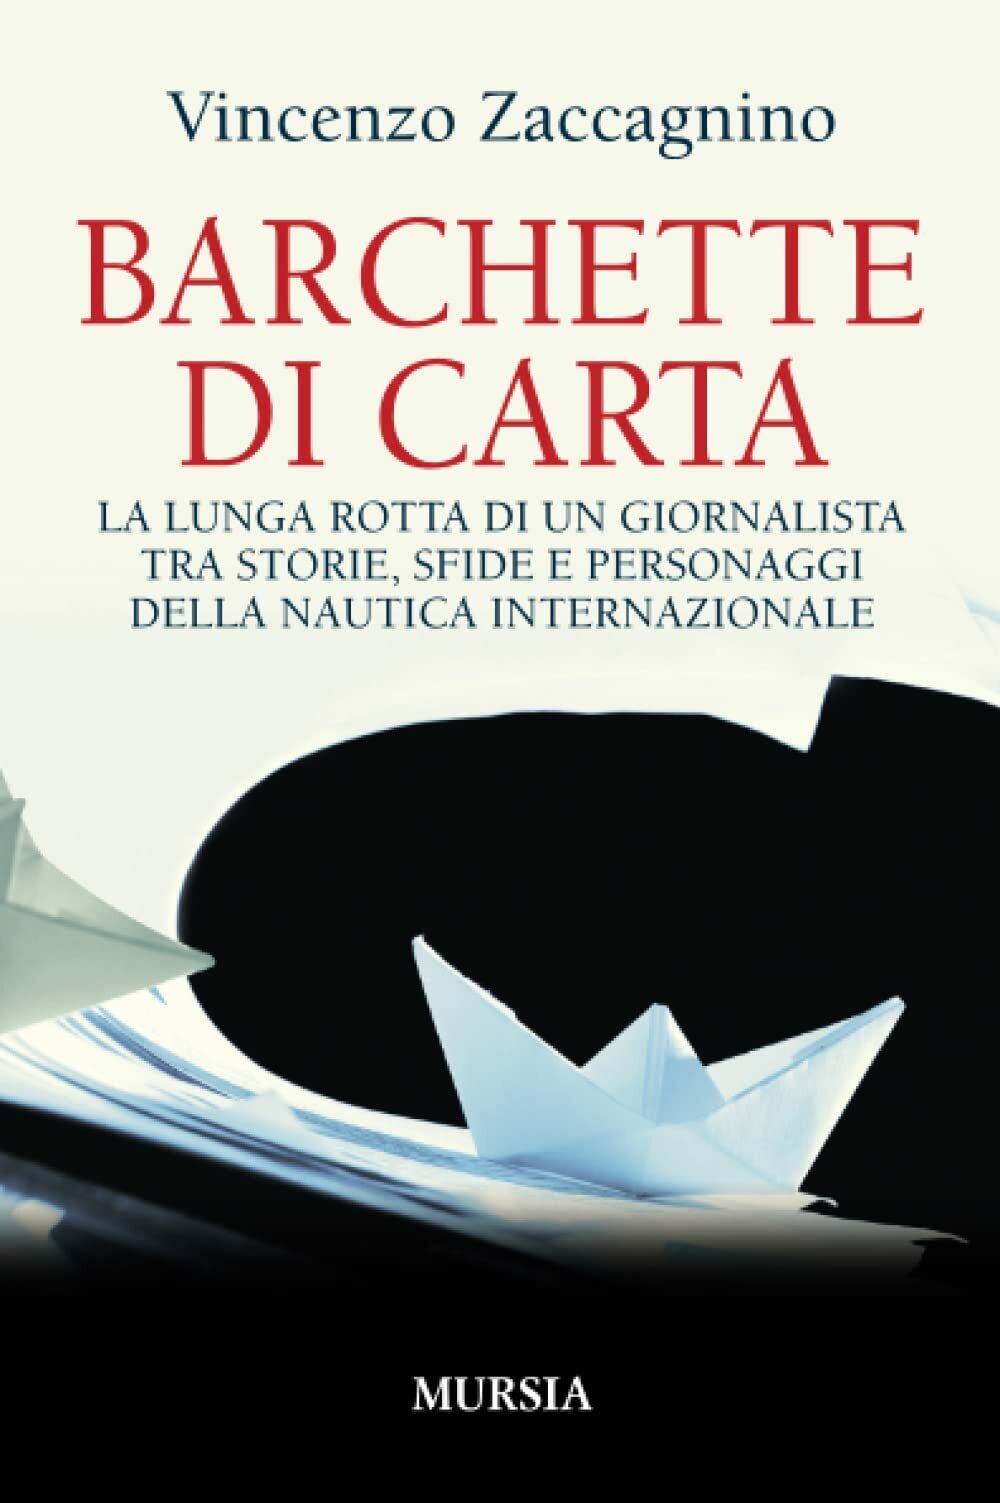 Barchette di carta - Vincenzo Zaccagnino - Ugo Mursia, 2016